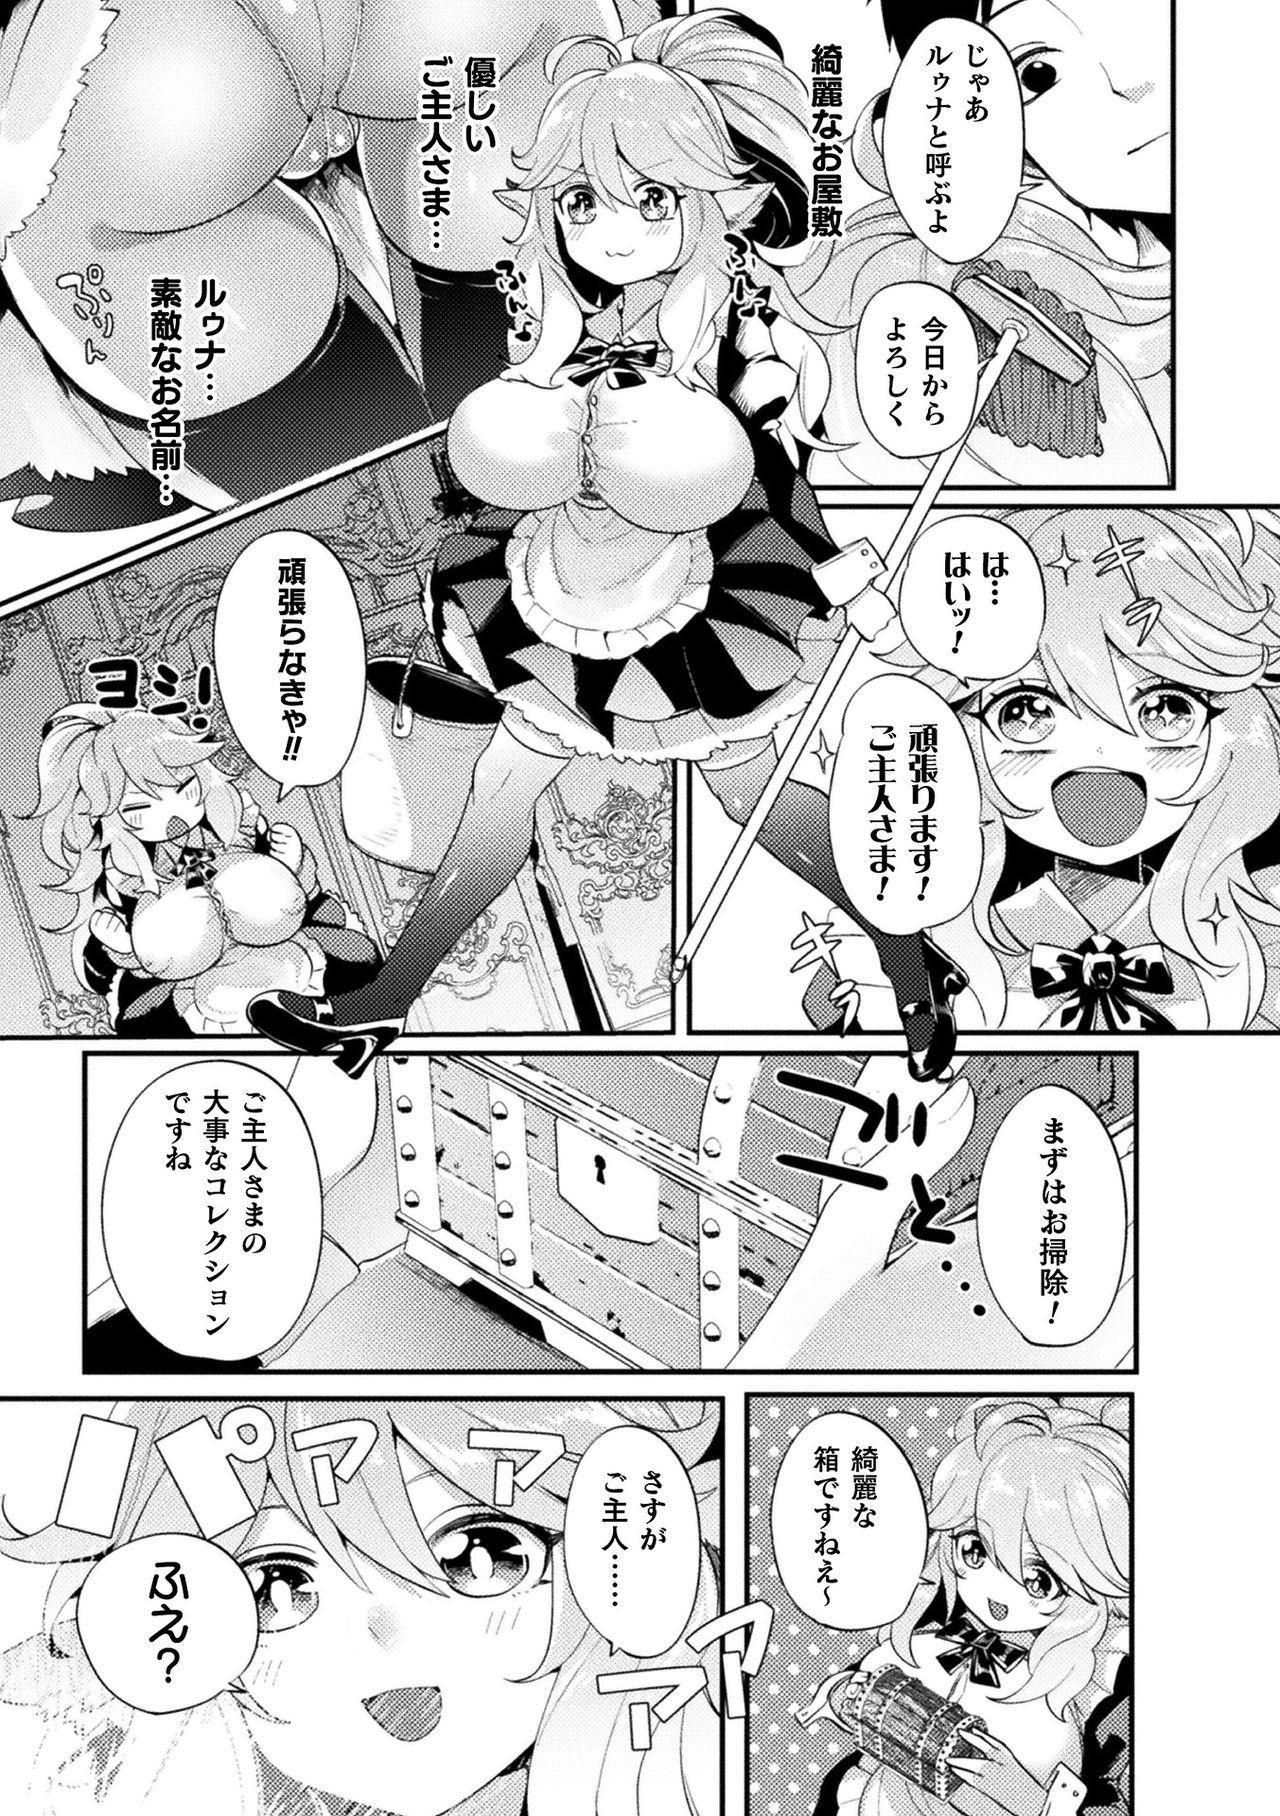 [Anthology] Bessatsu Comic Unreal Ponkotsu Fantasy Heroine H ~Doji o Funde Gyakuten Saretari Ero Trap ni Hamattari!?~ Vol. 1 [Digital] 5